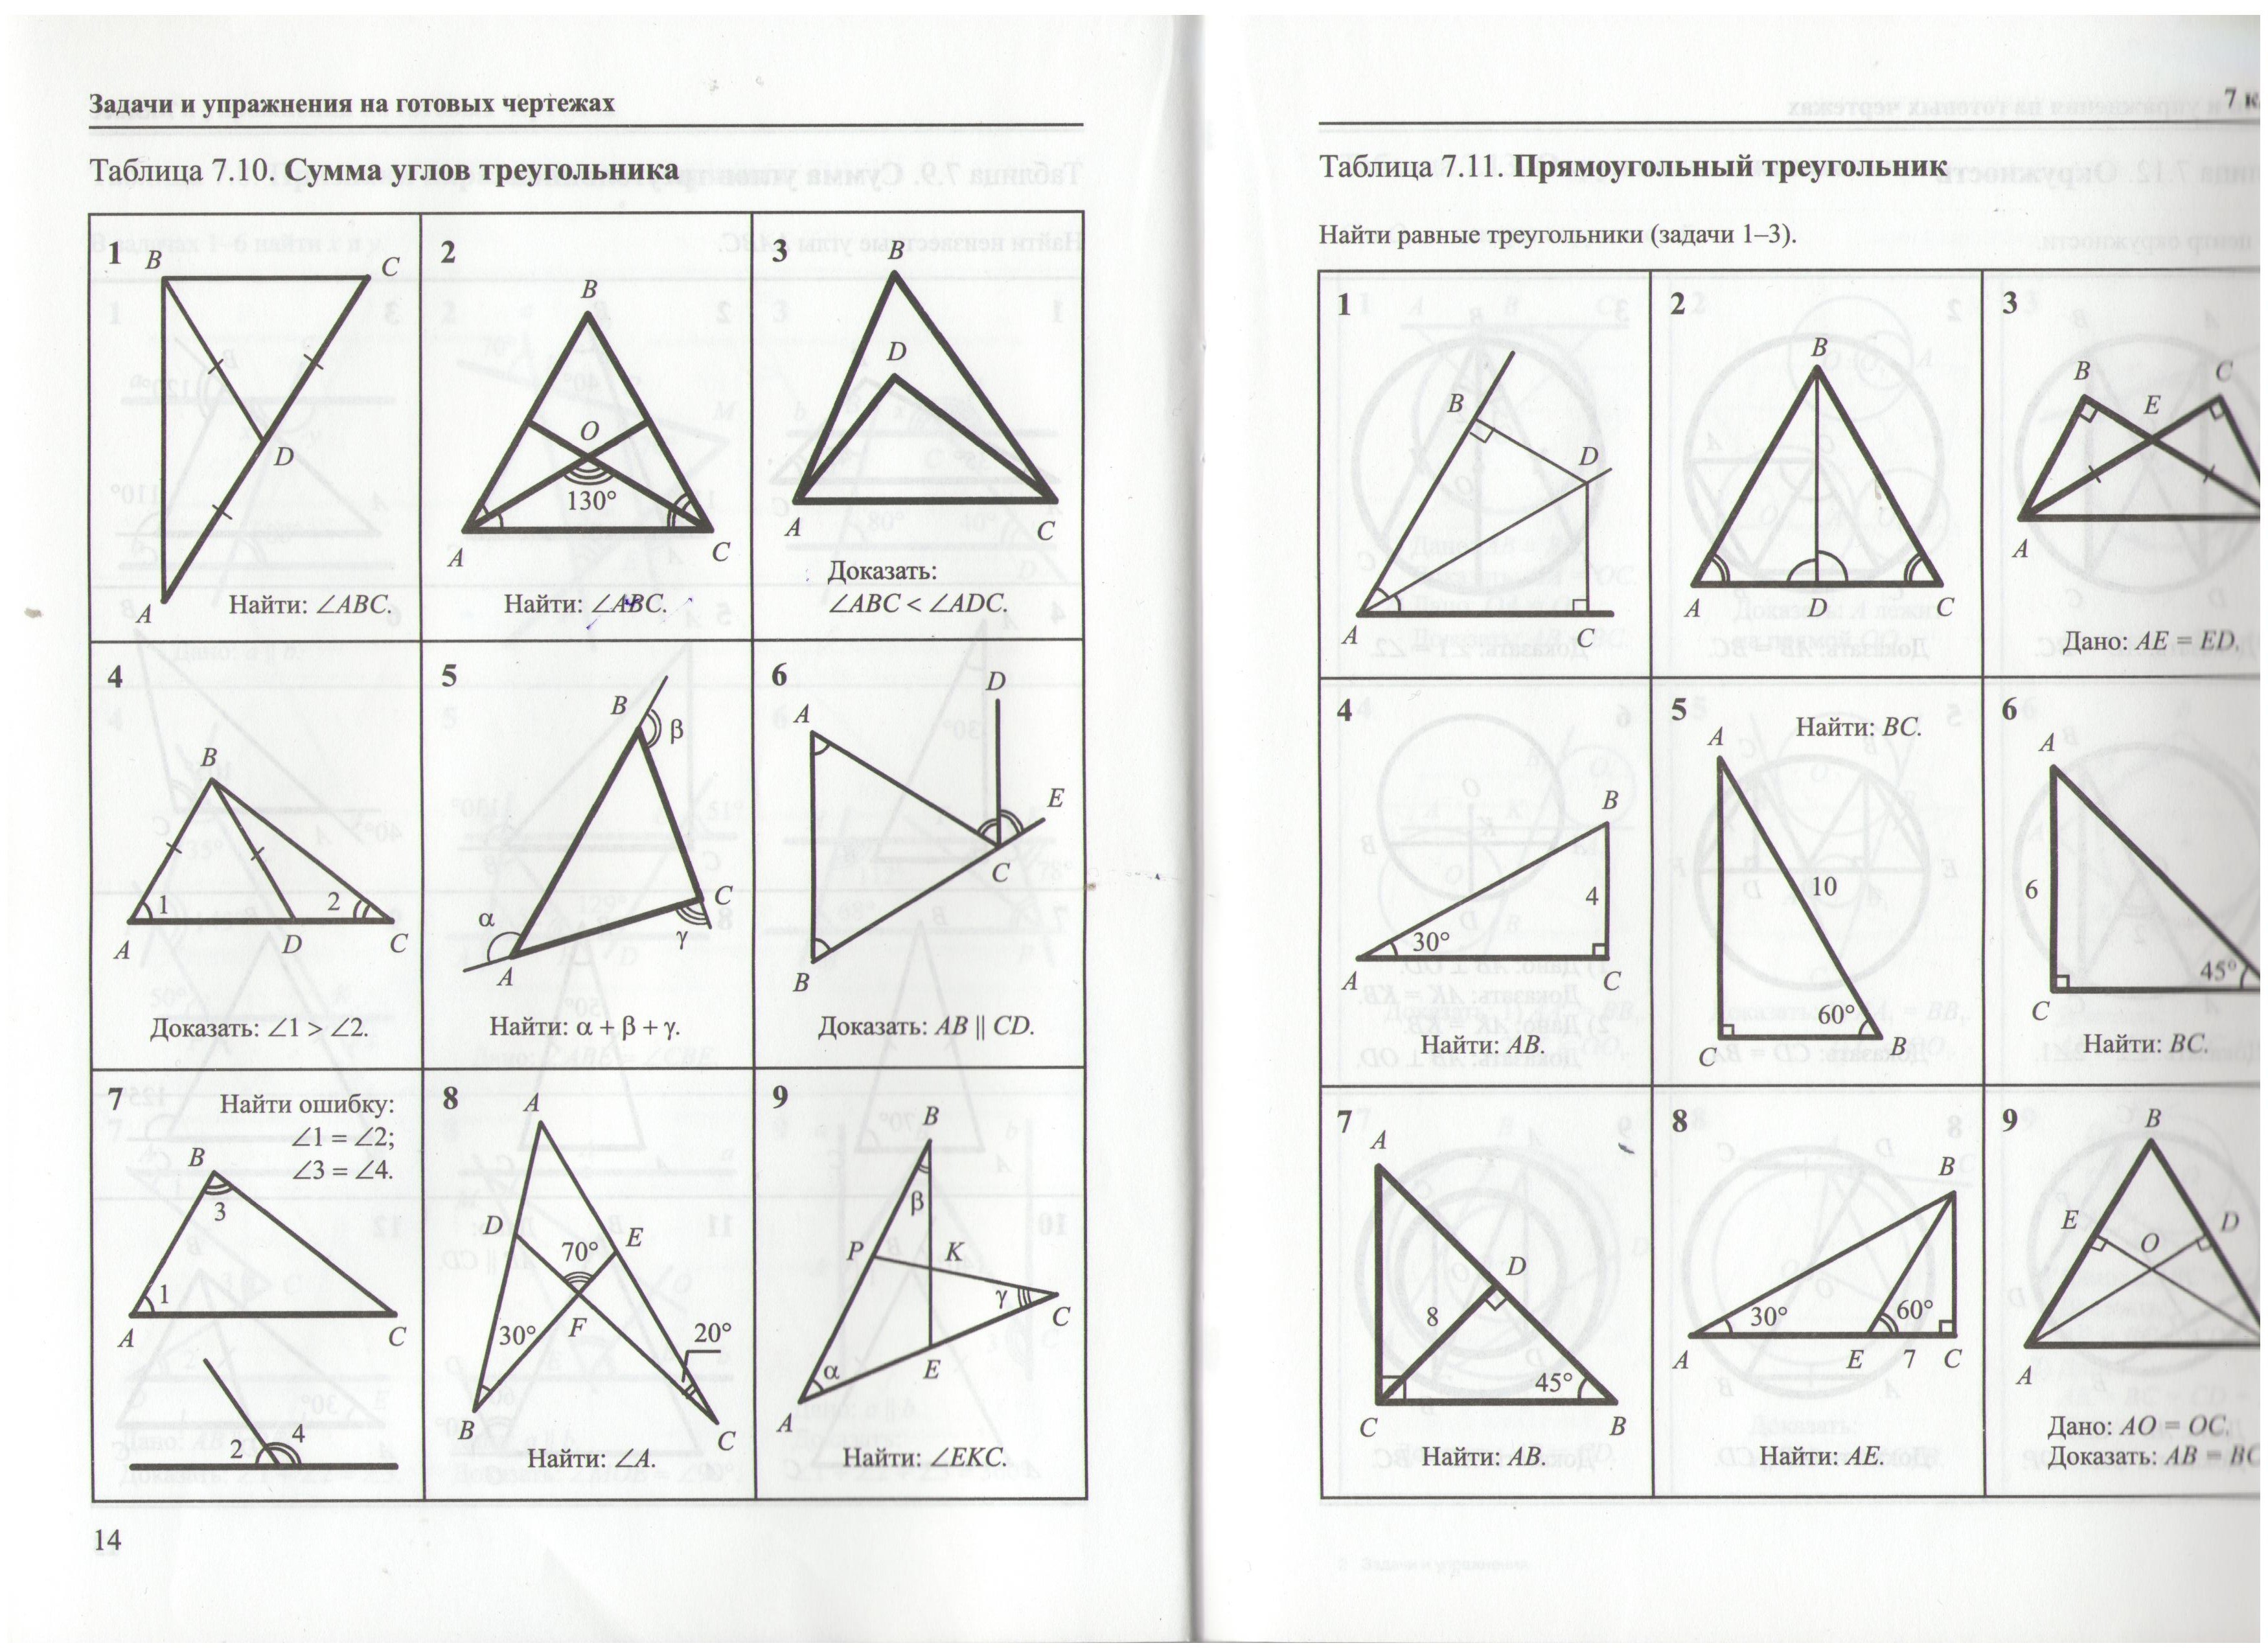 Задачи на готовых чертежах треугольники. Таблица 7.11 прямоугольный треугольник 7 класс. Чертежи треугольников для задач по геометрии 7 класс. Задачи по готовым чертежам геометрия 7 класс треугольники. Задачи и упражнения на готовых чертежах таблица 7 11.